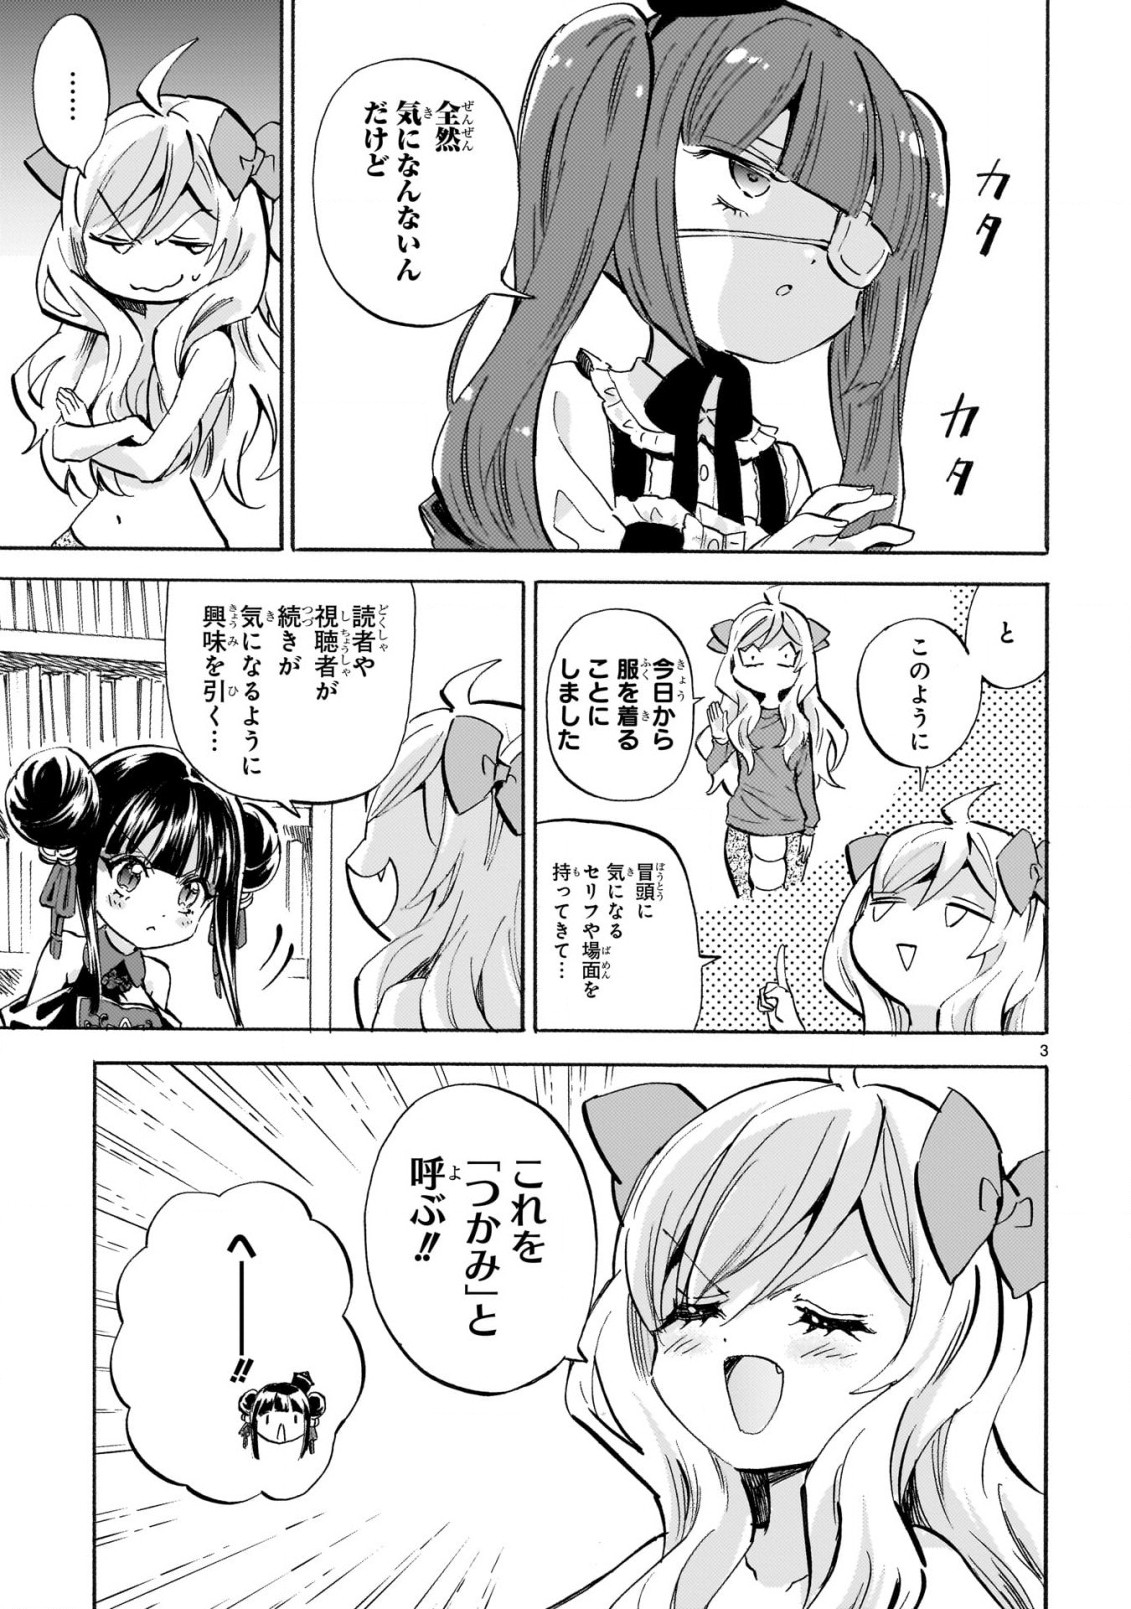 Jashin-chan Dropkick - Chapter 231 - Page 3